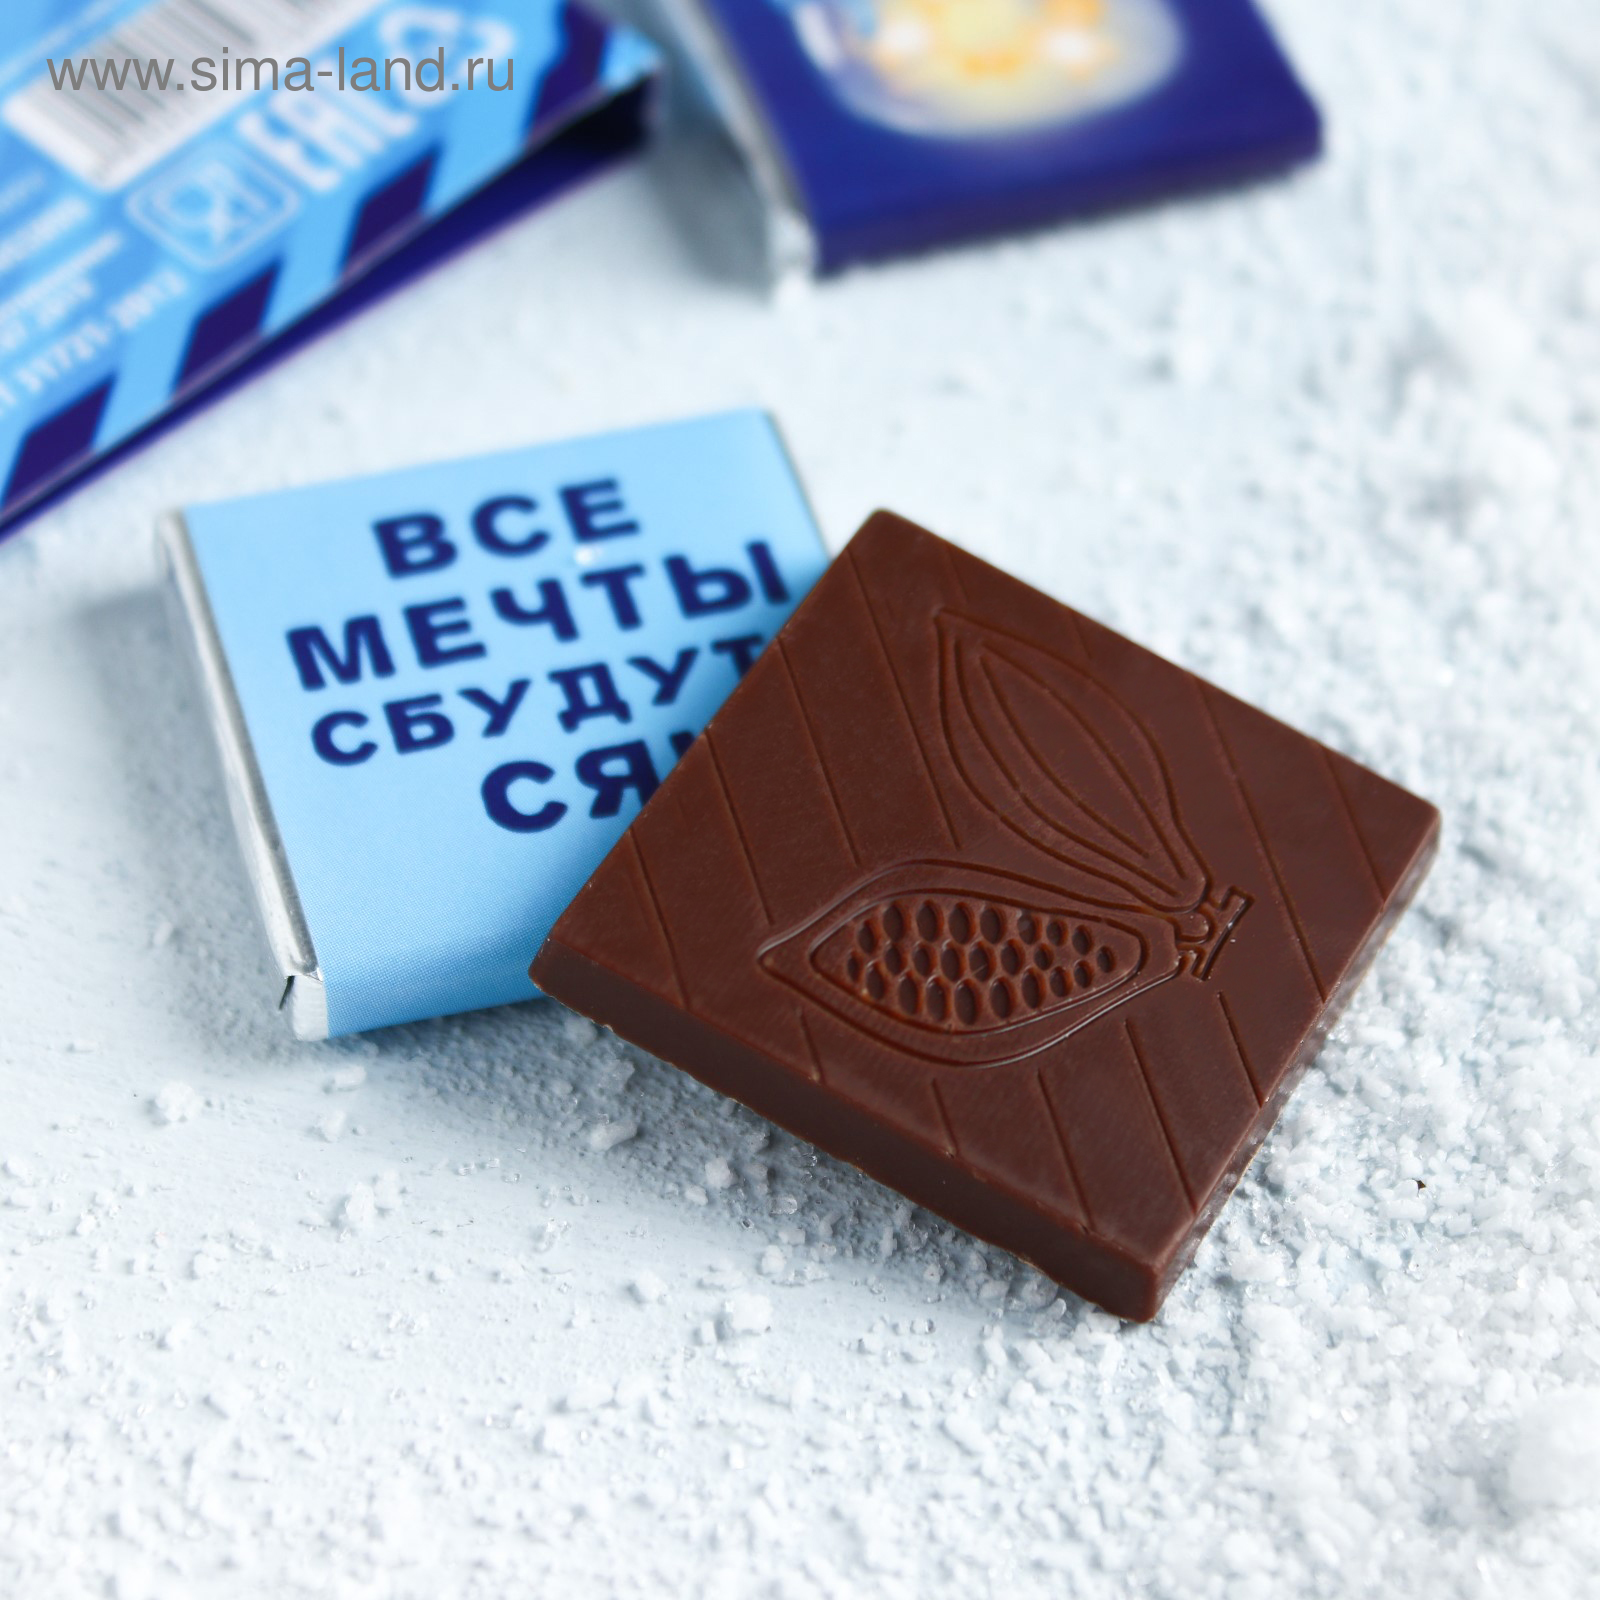 Шоколадки берите. Мини шоколадки. Шоколадки с логотипом. Маленькие шоколадки. Небольшие шоколадки.